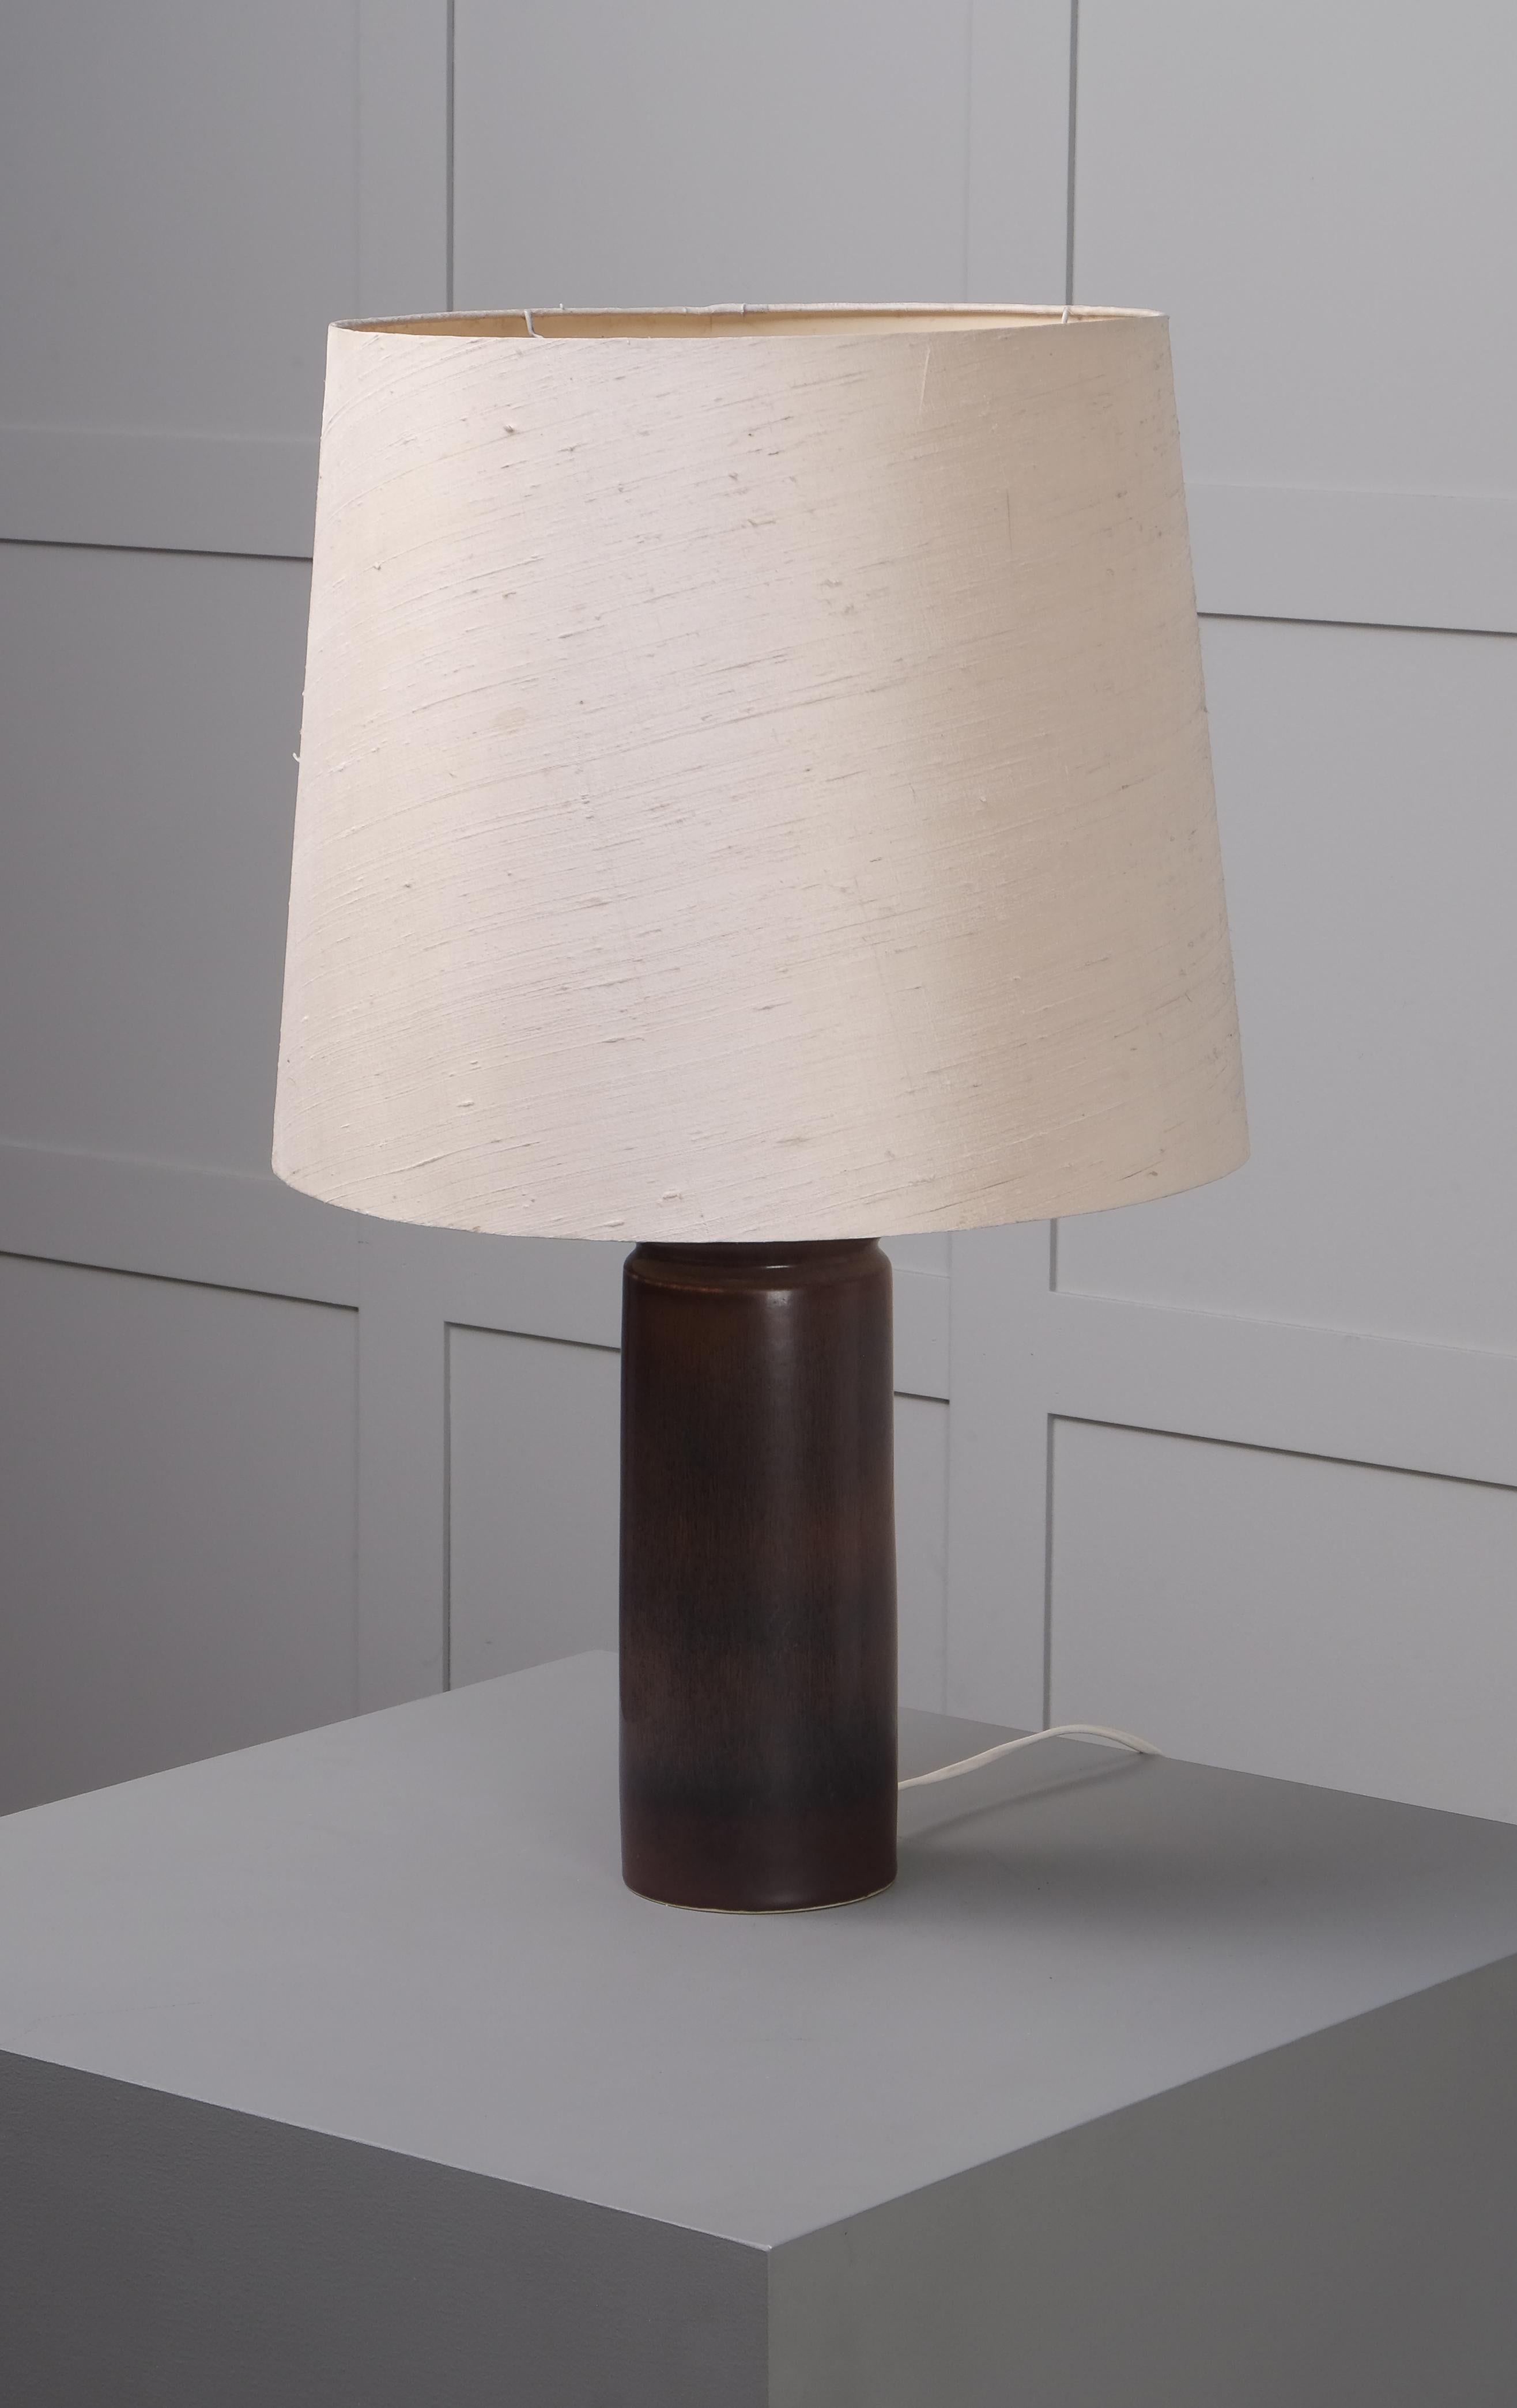 3 lampes disponibles. Le prix indiqué est pour une lampe.
Grès émaillé brun, conçu par Carl-Harry Stålhane et produit par la firme suédoise Rörstrand, années 1950.
Vendu avec ou sans abat-jour.
Mesures : Hauteur sans abat-jour : 36 cm.